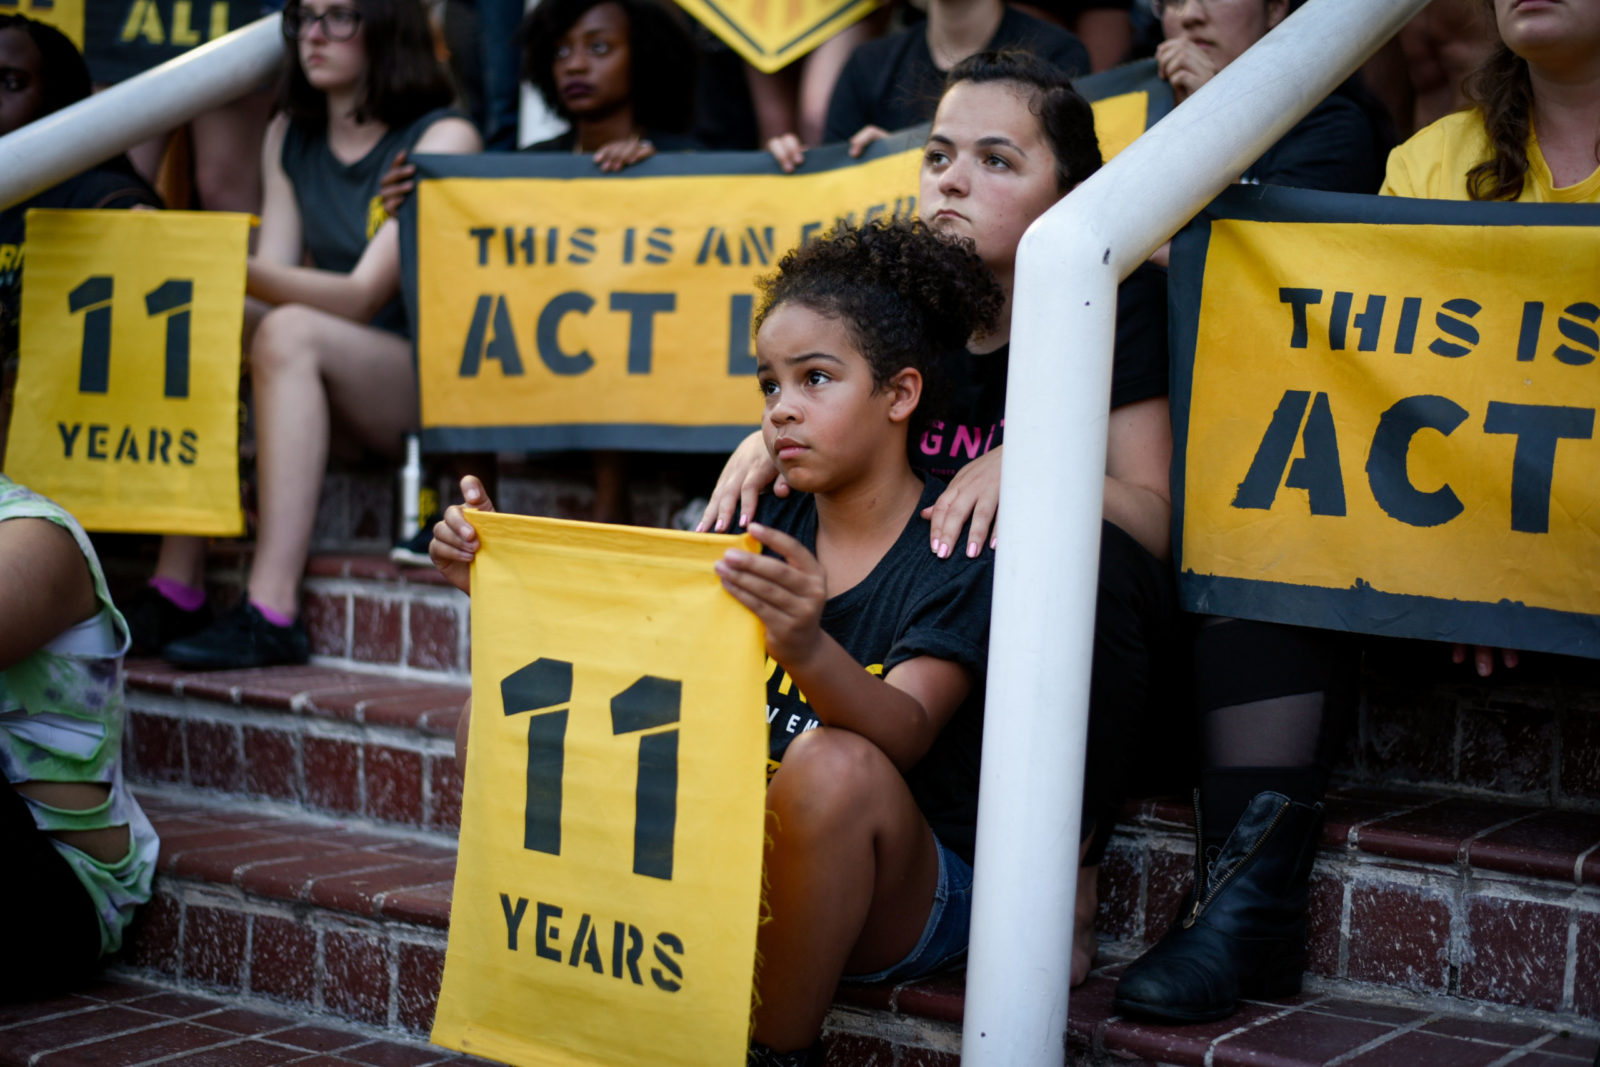 Un jeune militant de Sunrise est assis sur les marches du siège de la DNC à DC, tenant une pancarte "11 ans". Elle est entourée de camarades militants.